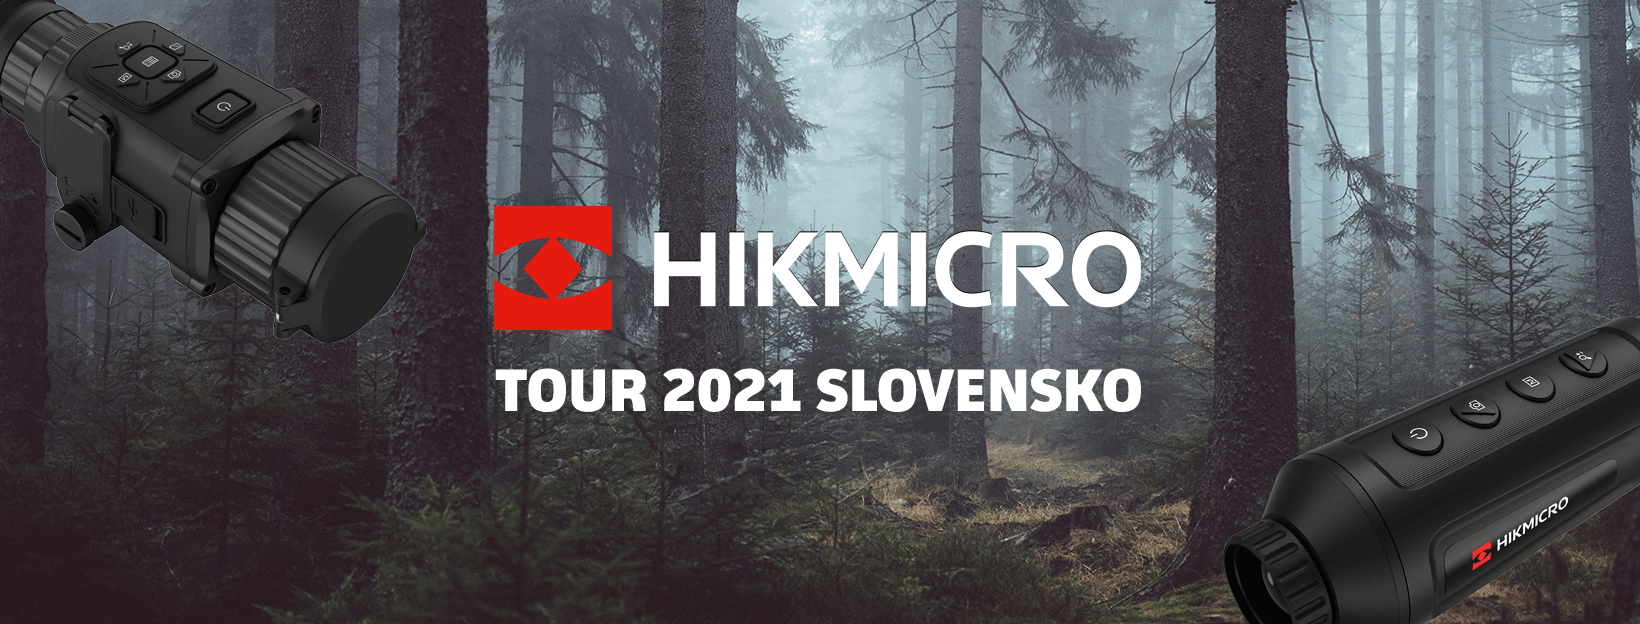 HIKMICRO Tour 2021 Slovensko